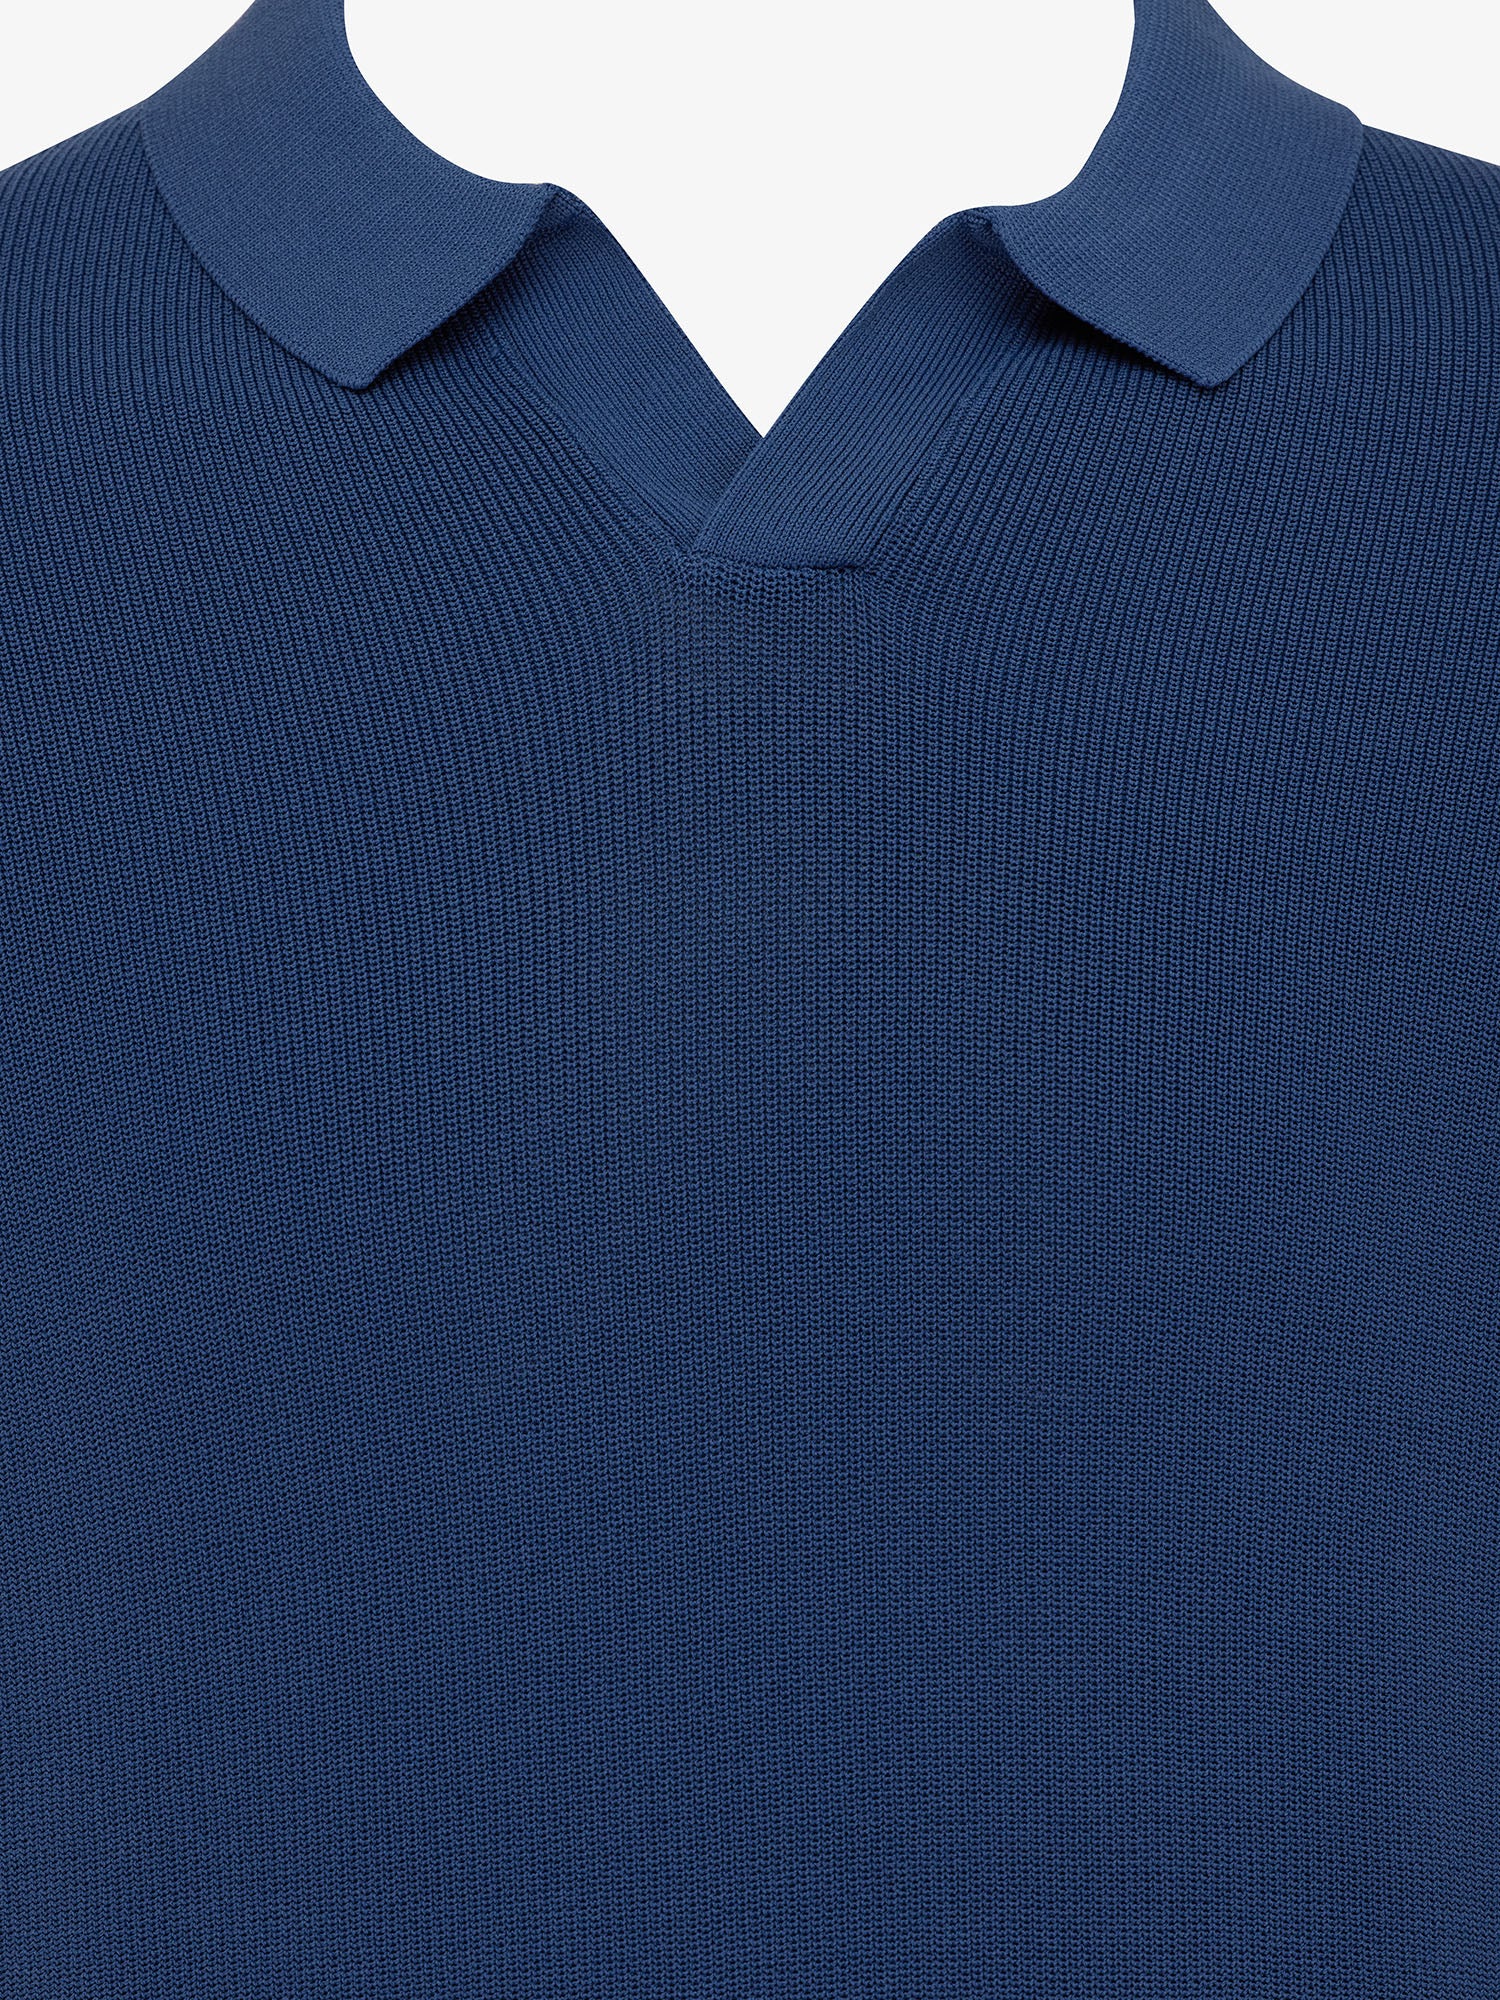 Genti Polo Shirt - Raf blauw